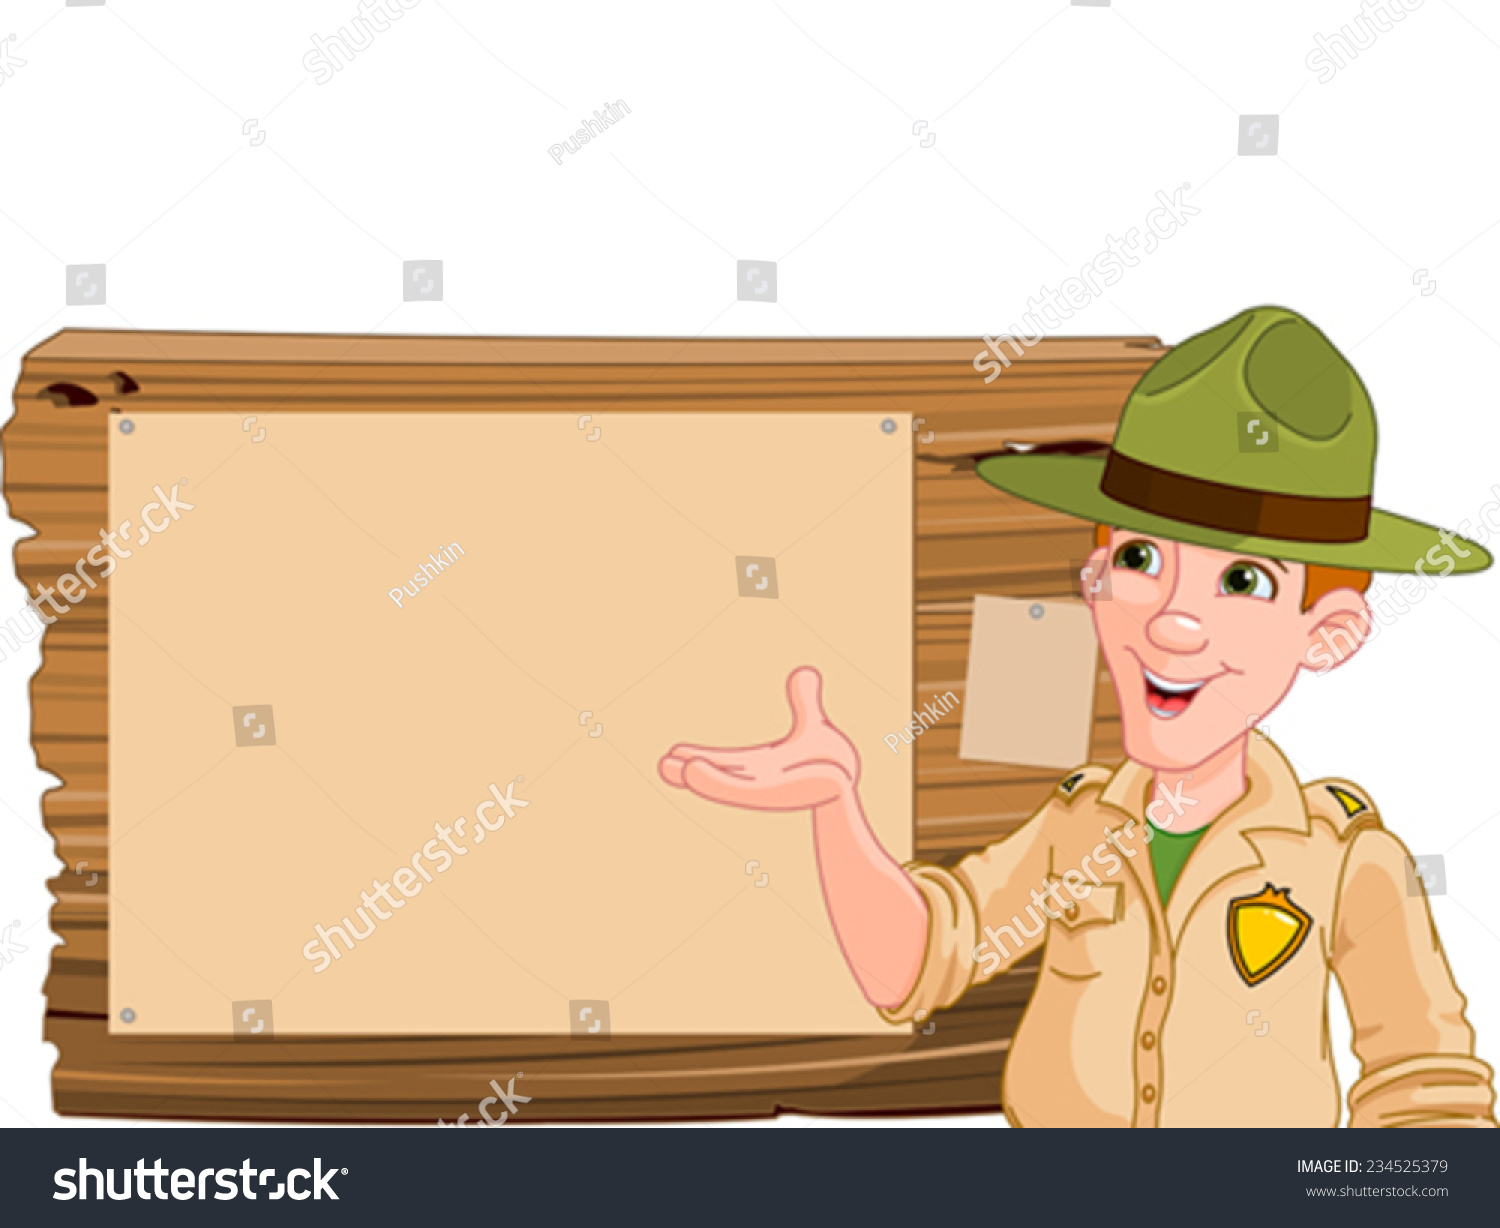 SVG of Illustration of a forest ranger or park ranger pointing at a wooden sign svg